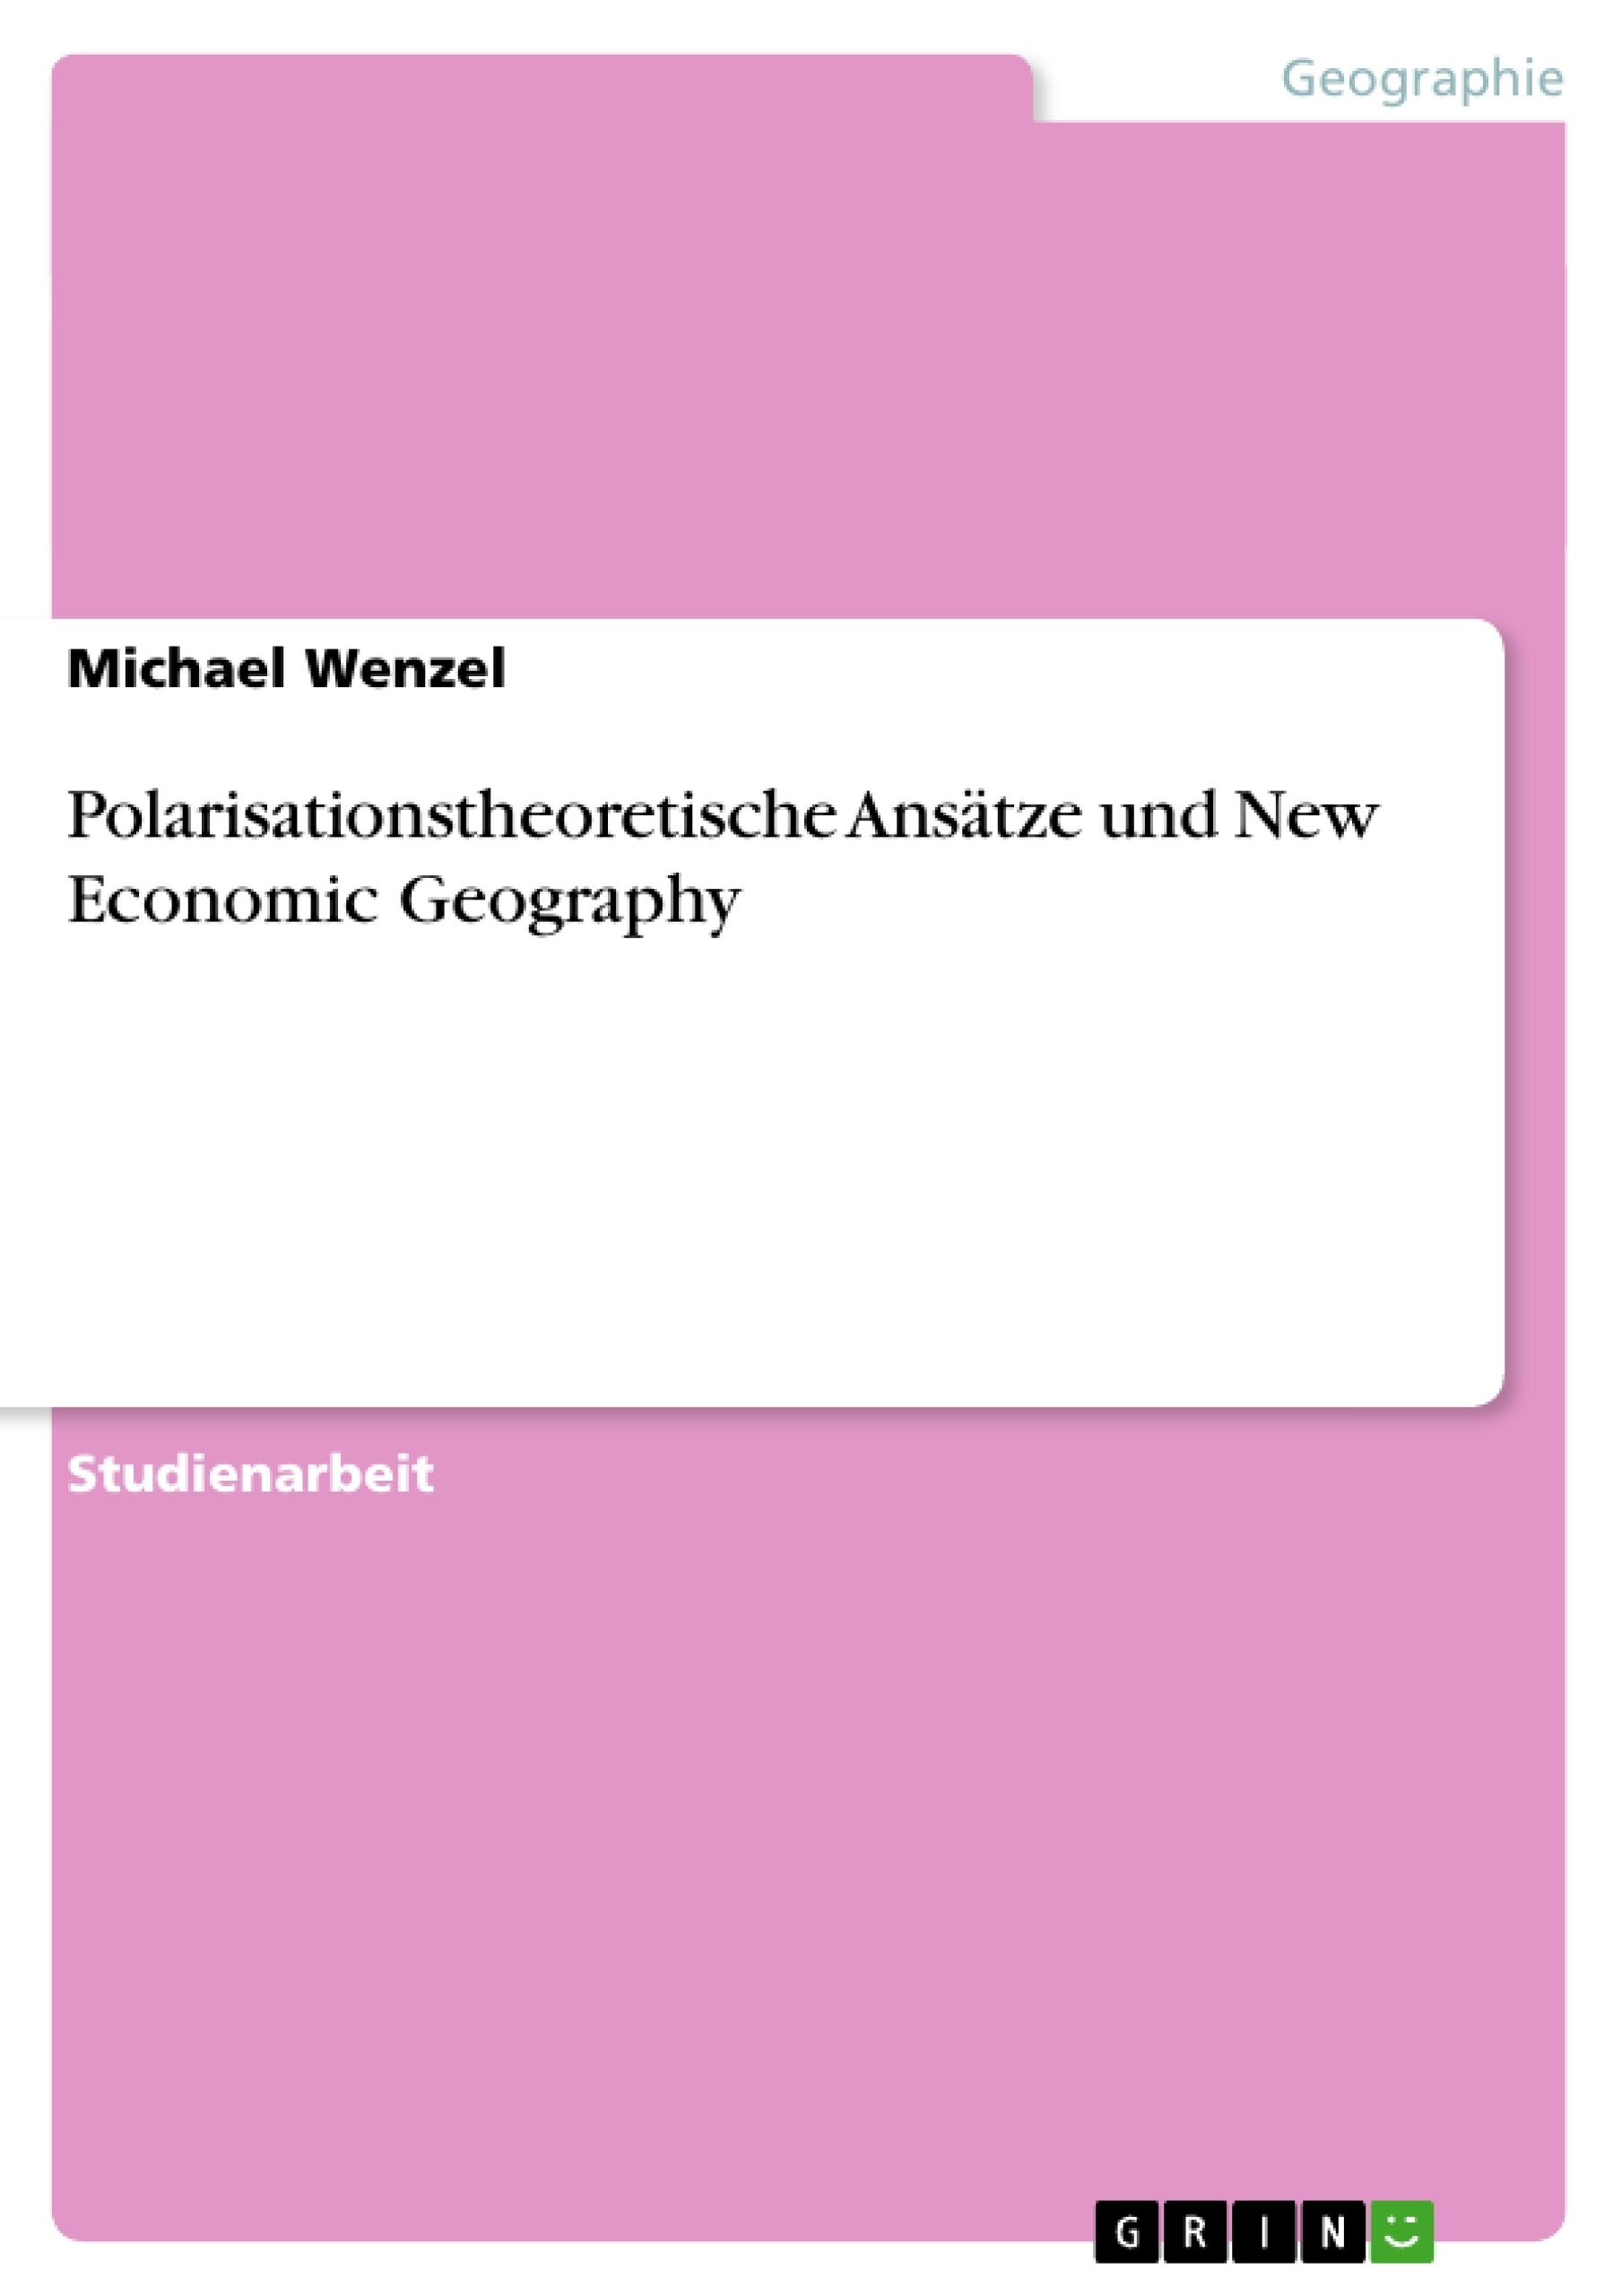 Título: Polarisationstheoretische Ansätze und New Economic Geography